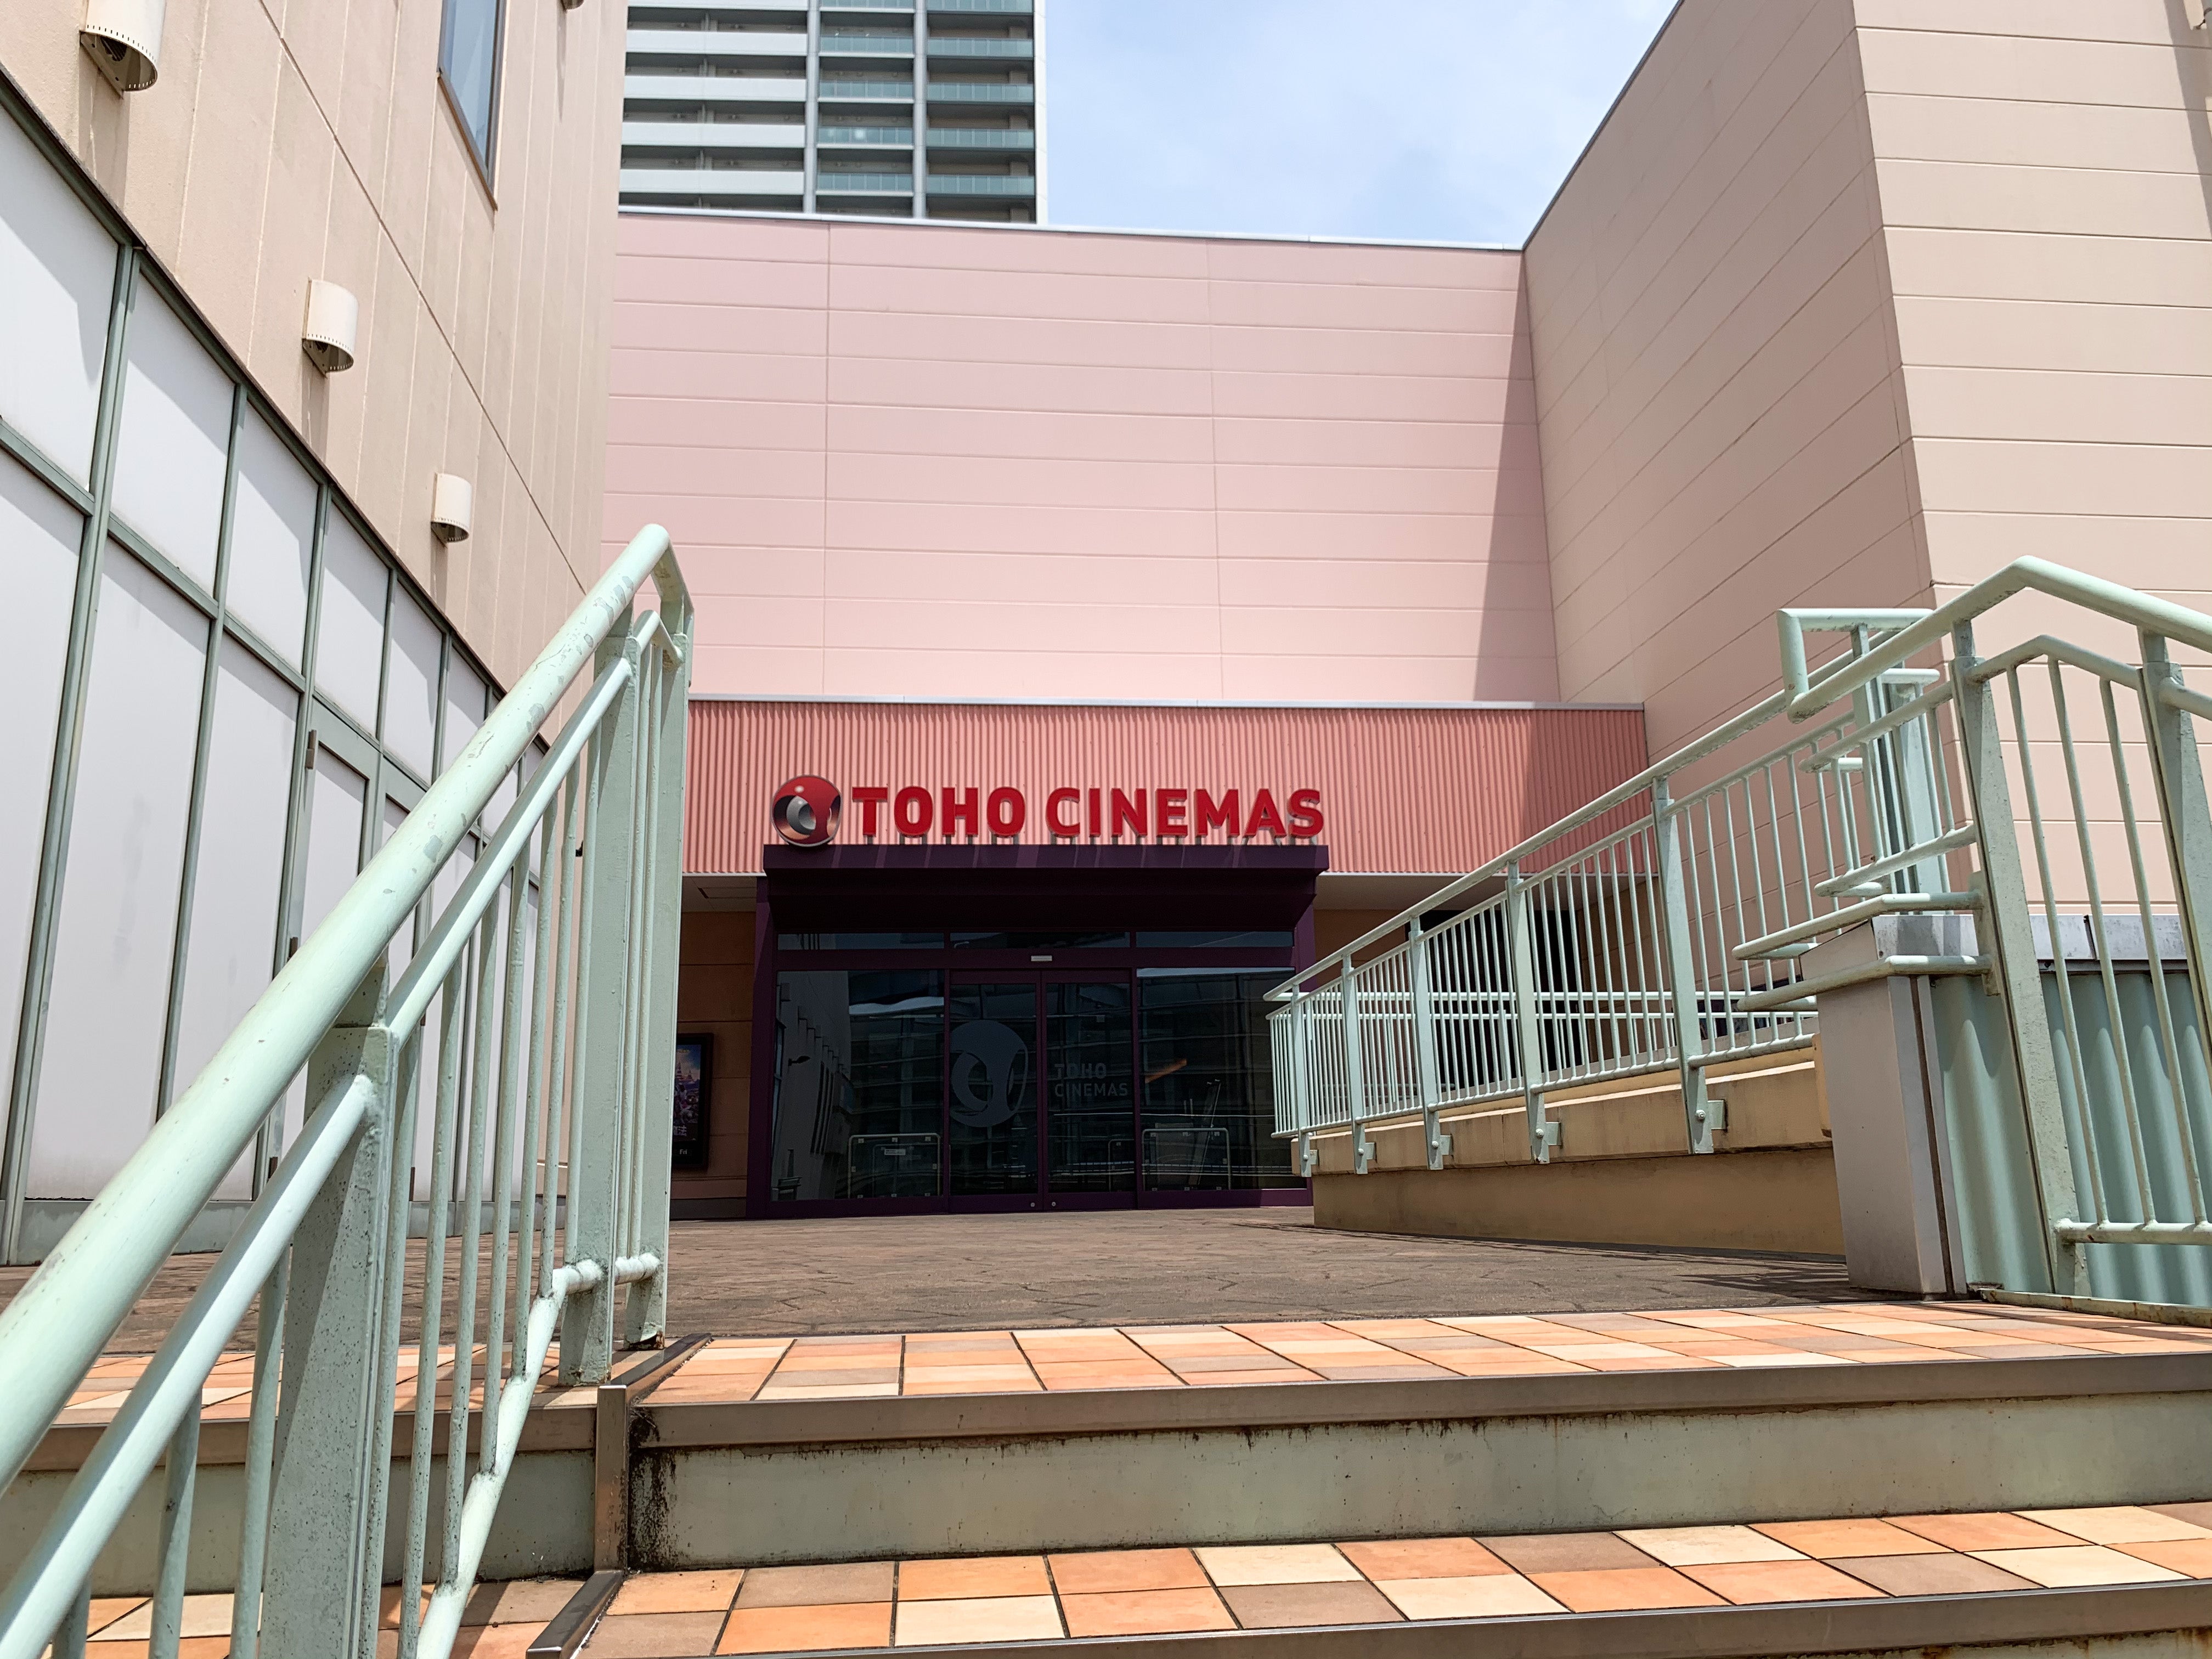 日本の映画館 千葉・TOHOシネマズ八千代緑が丘 映画観る以外にやる事はないのか